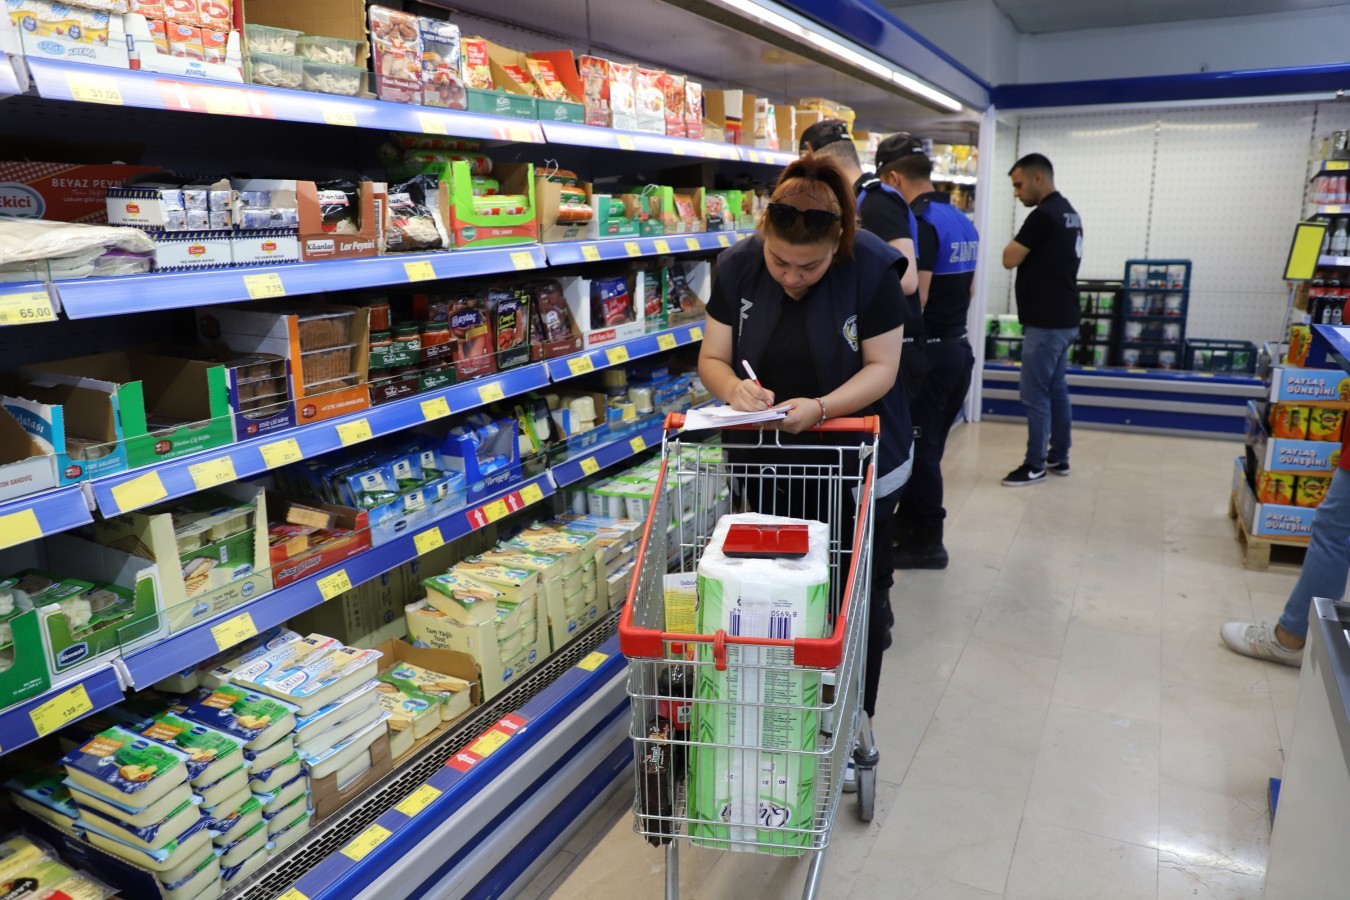 Çankırı'da Zincir Marketlere Sıkı Denetim 304 Ürün Raflardan Kaldırıldı (1)